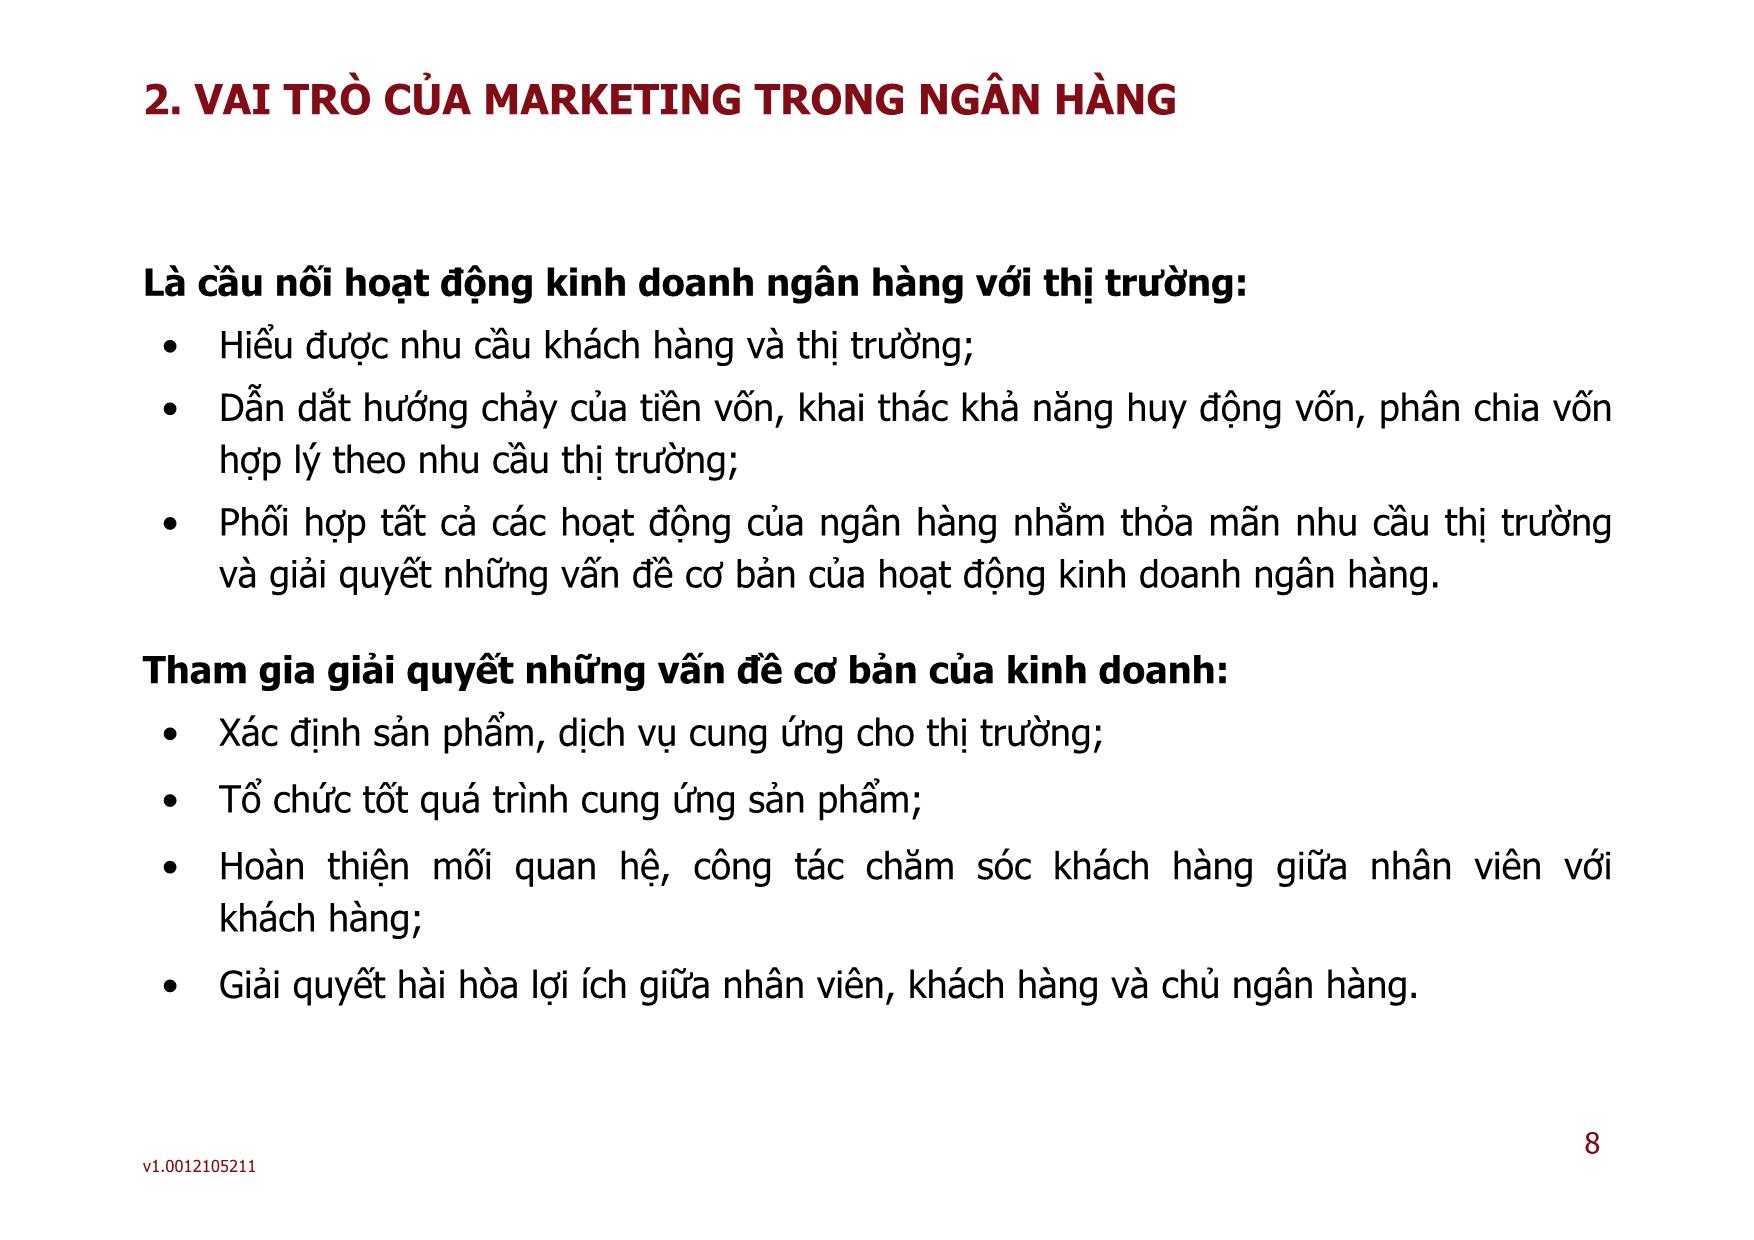 Marketing ngân hàng - Bài 01: Tổng quan về marketing ngân hàng trang 8